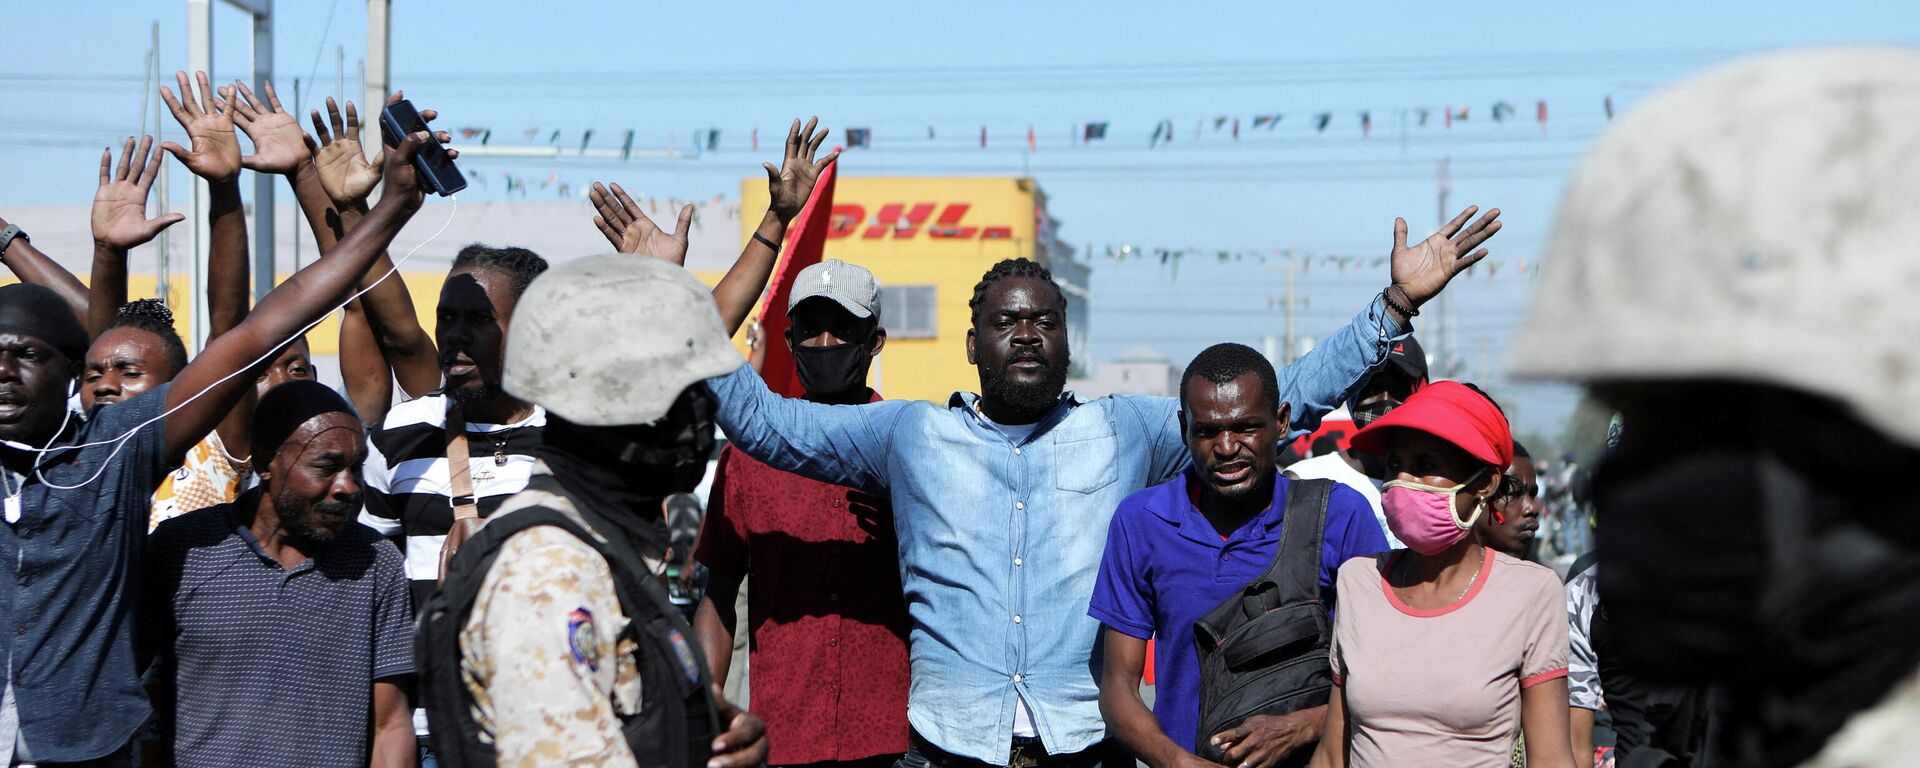 Protesta de empleados del sector textil en Haití - Sputnik Mundo, 1920, 23.02.2022